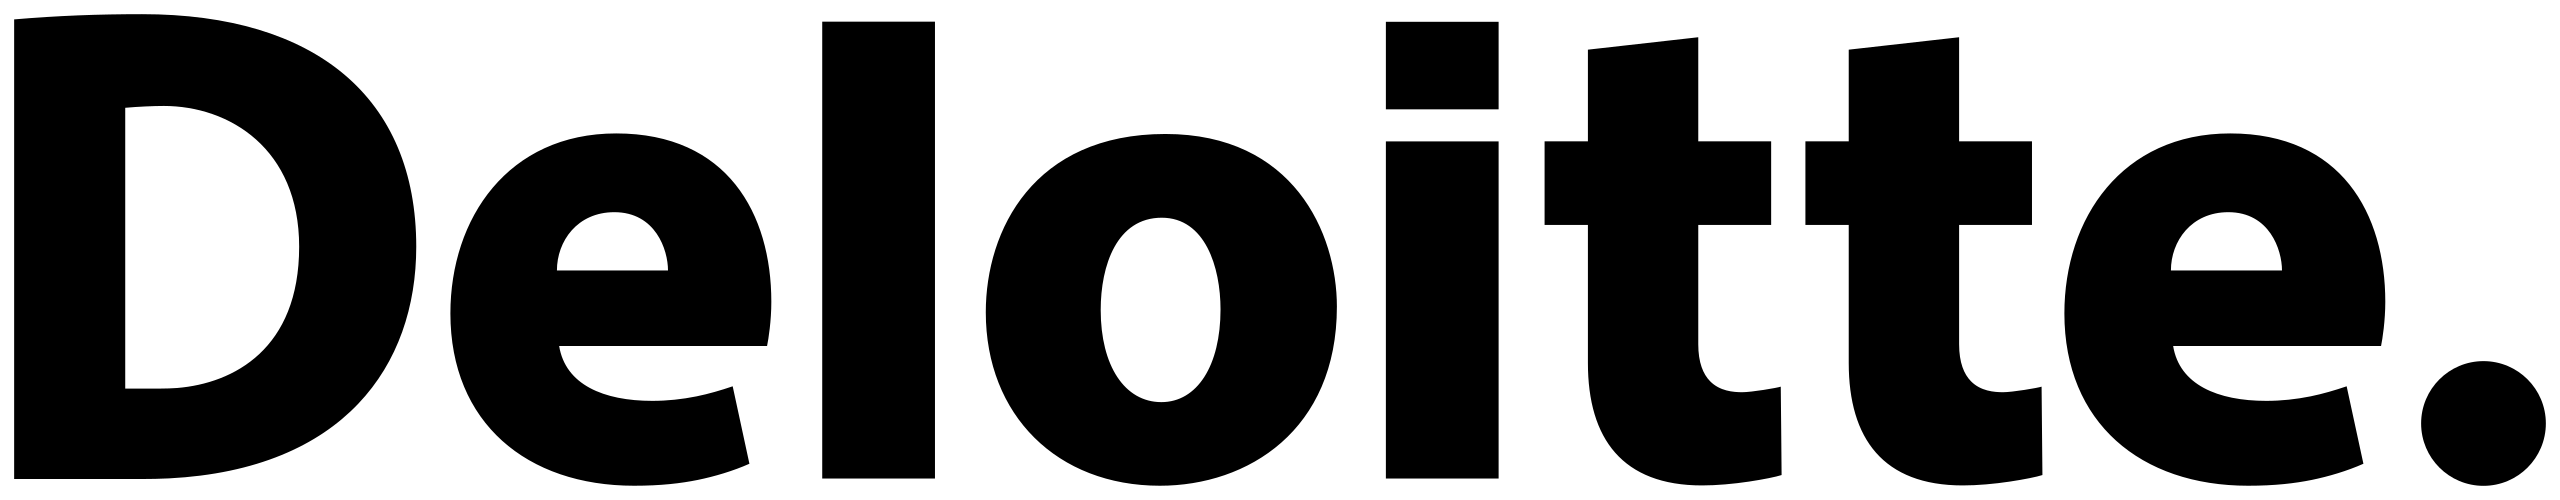 Deloitte_Deutschland_logo.svg